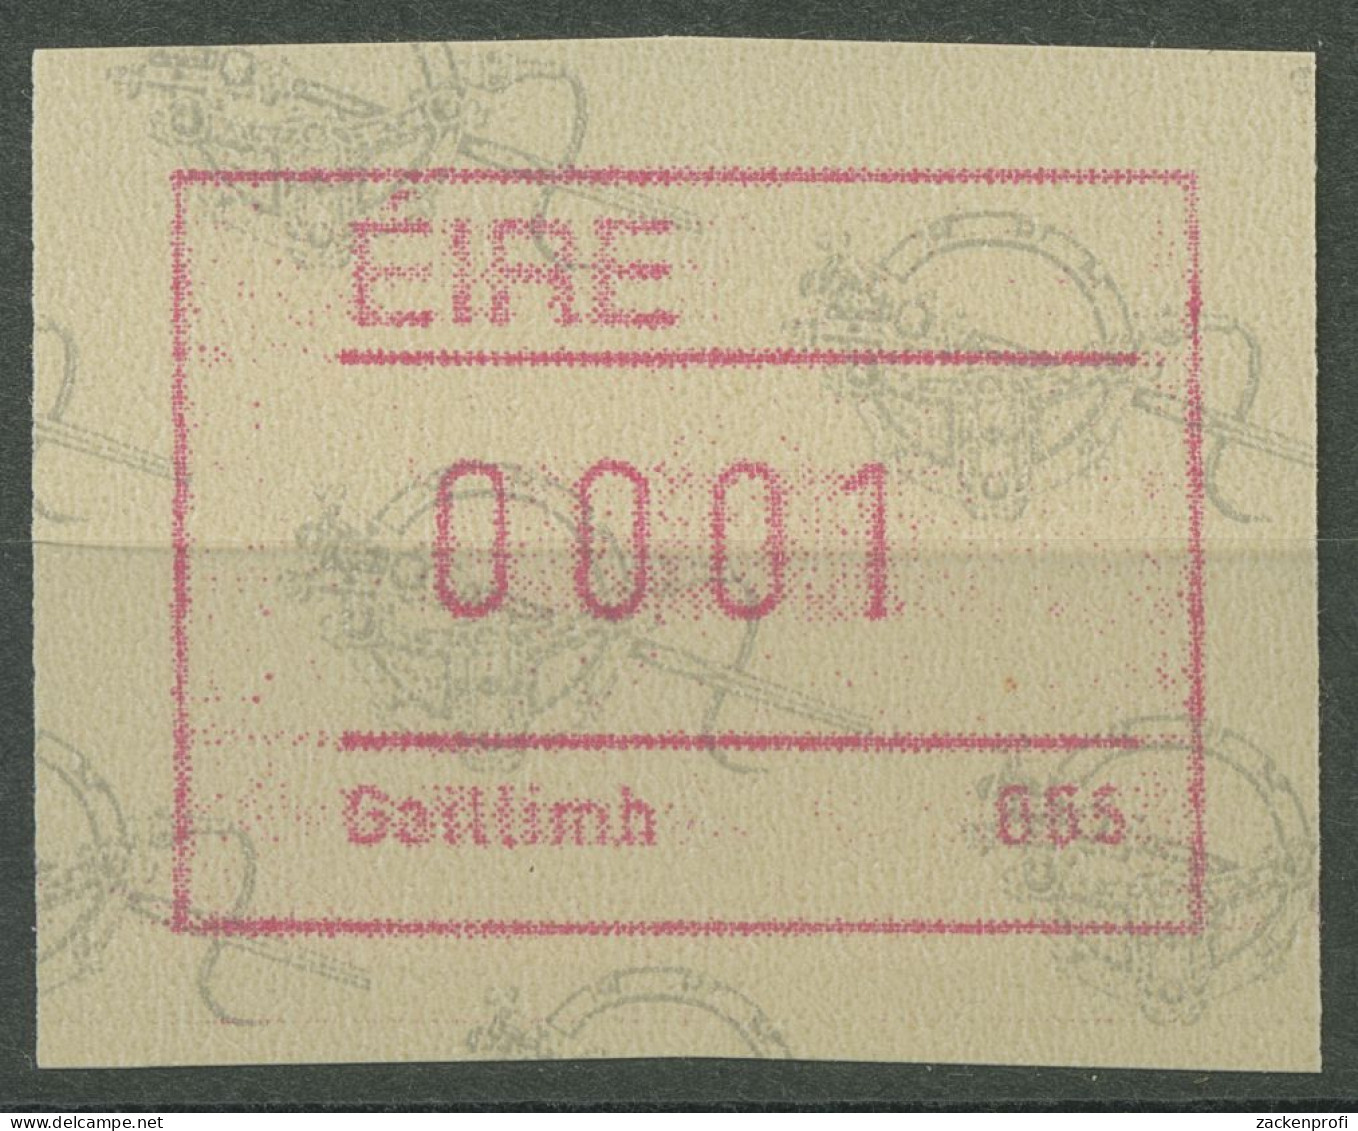 Irland Automatenmarken 1992 Einzelwert ATM 4 Postfrisch - Viñetas De Franqueo (Frama)